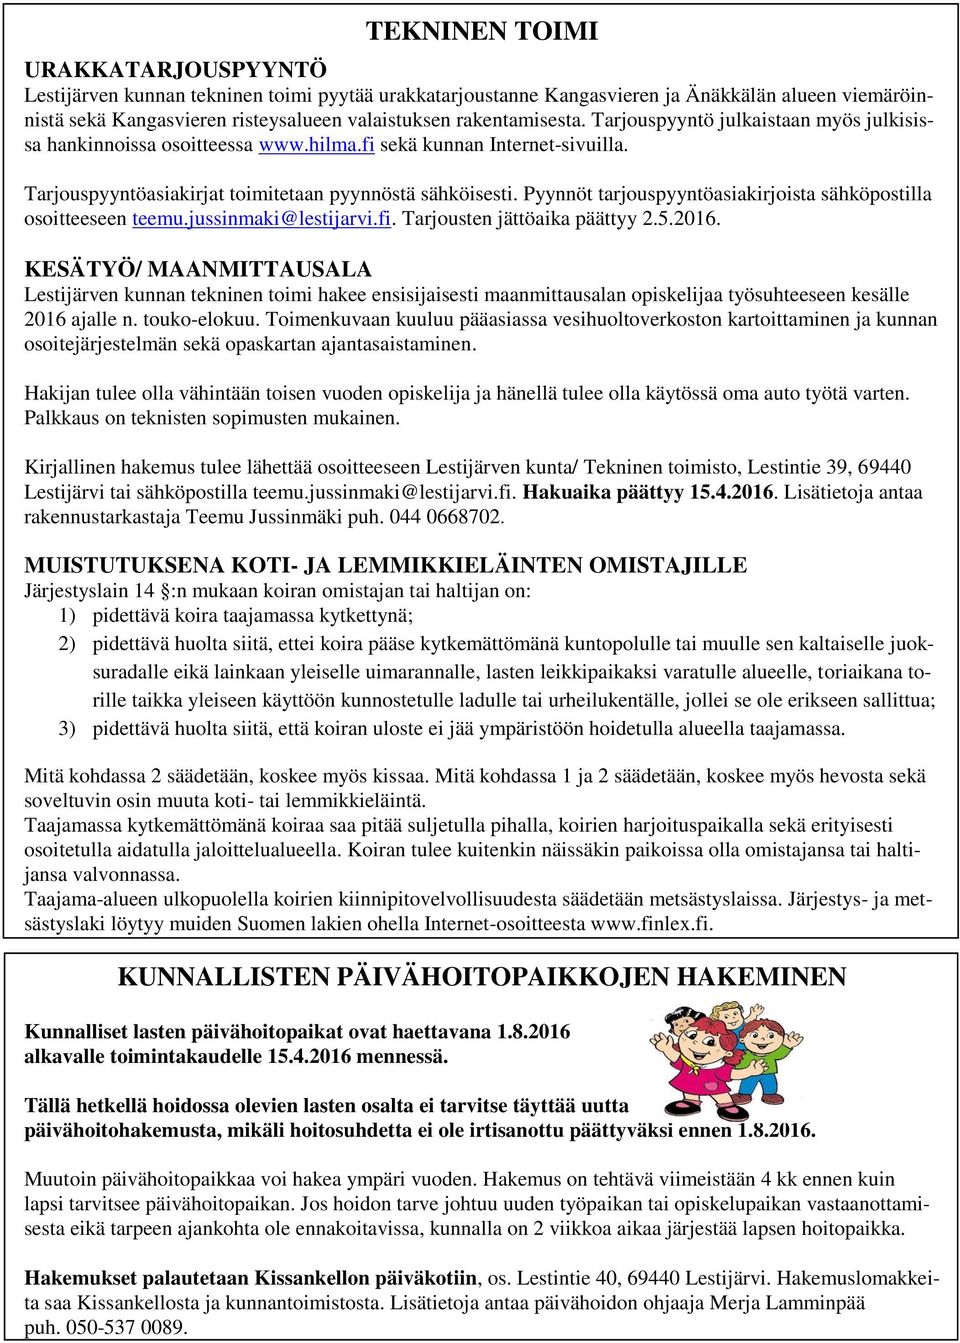 Pyynnöt tarjouspyyntöasiakirjoista sähköpostilla osoitteeseen teemu.jussinmaki@lestijarvi.fi. Tarjousten jättöaika päättyy 2.5.2016.